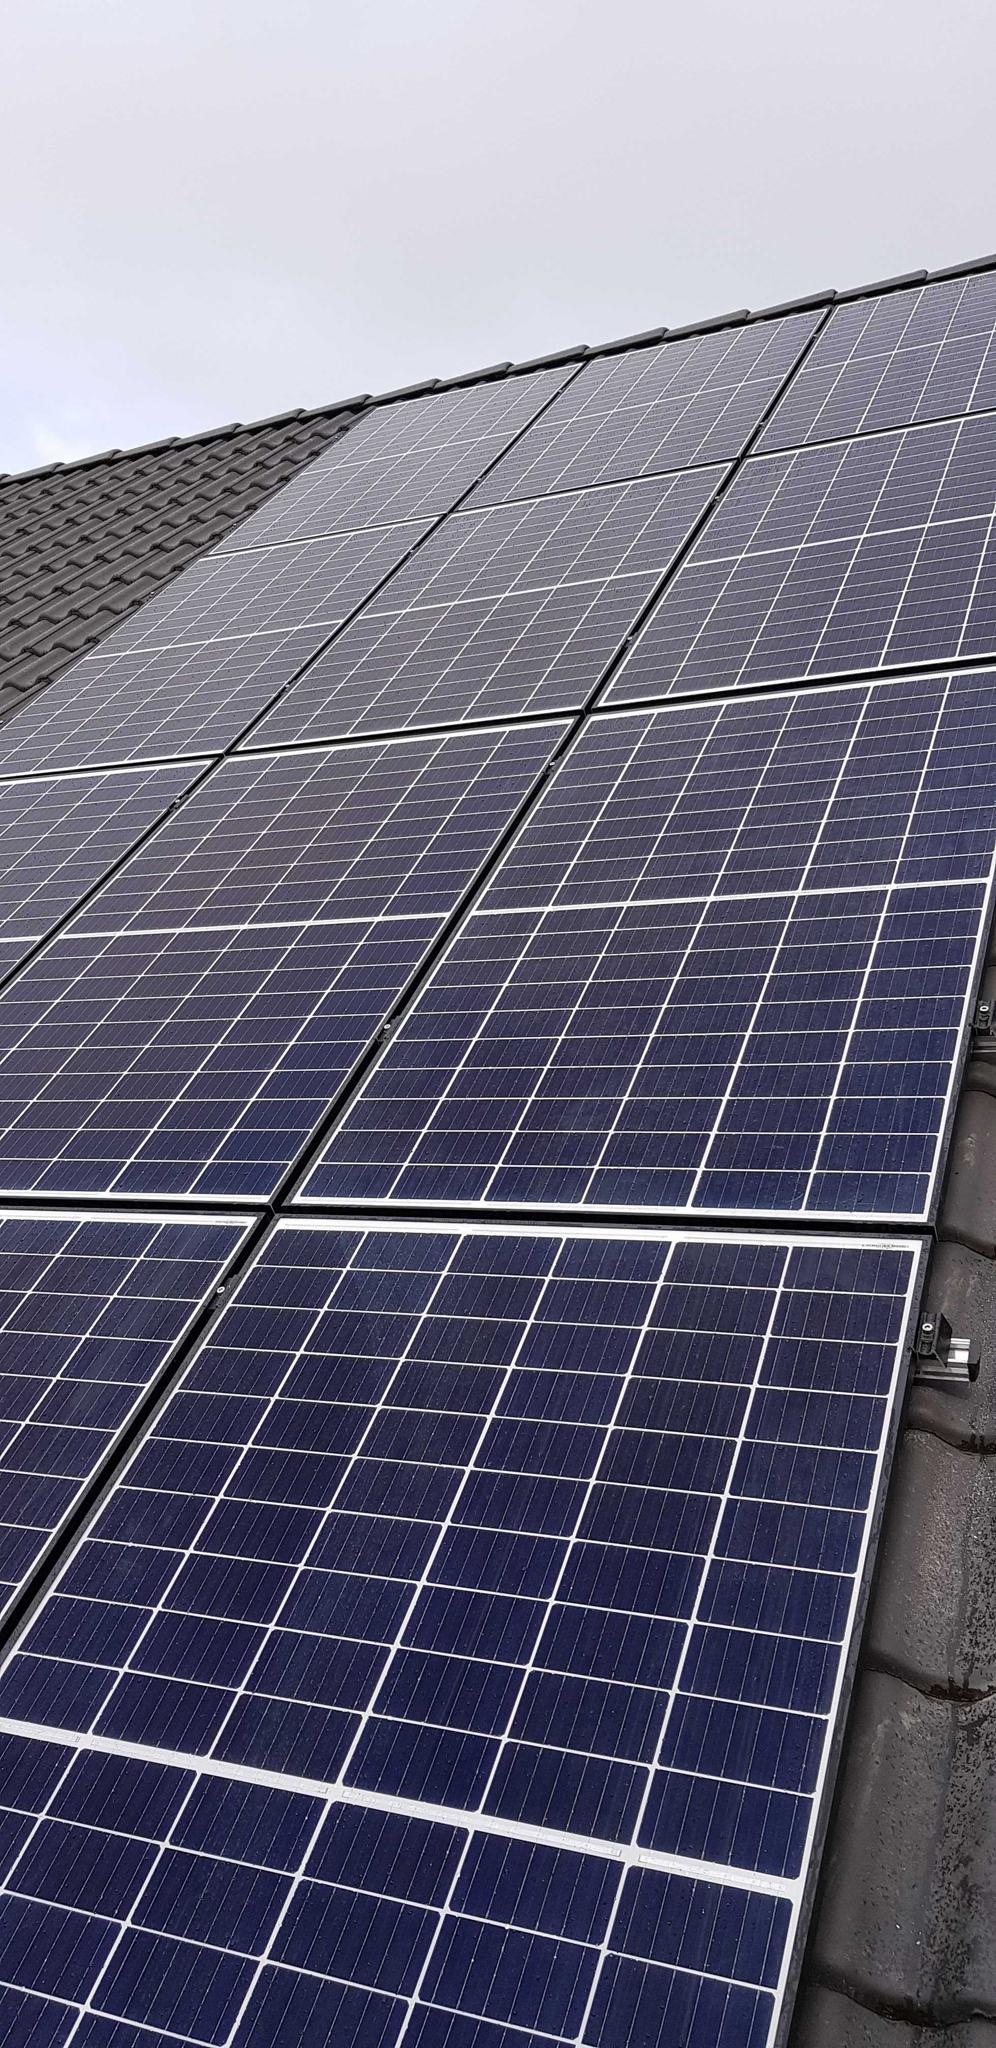 zolar Solarmodule - wie viel spart man mit einer Photovoltaikanlage?